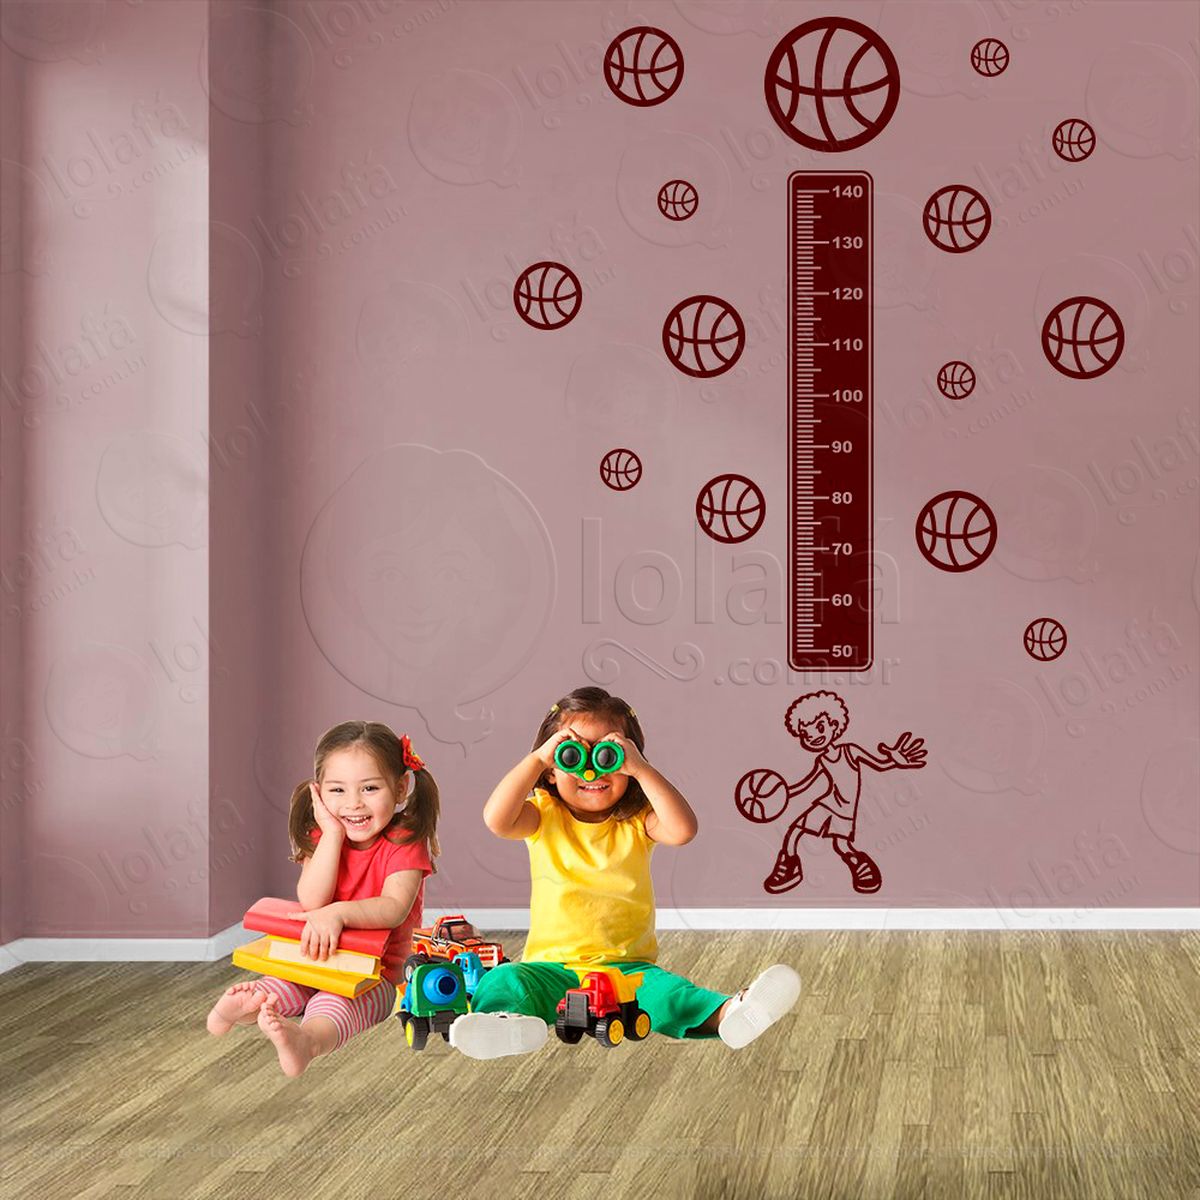 basquetebol e bolas de basquete adesivo régua de crescimento infantil, medidor de altura para quarto, porta e parede - mod:262